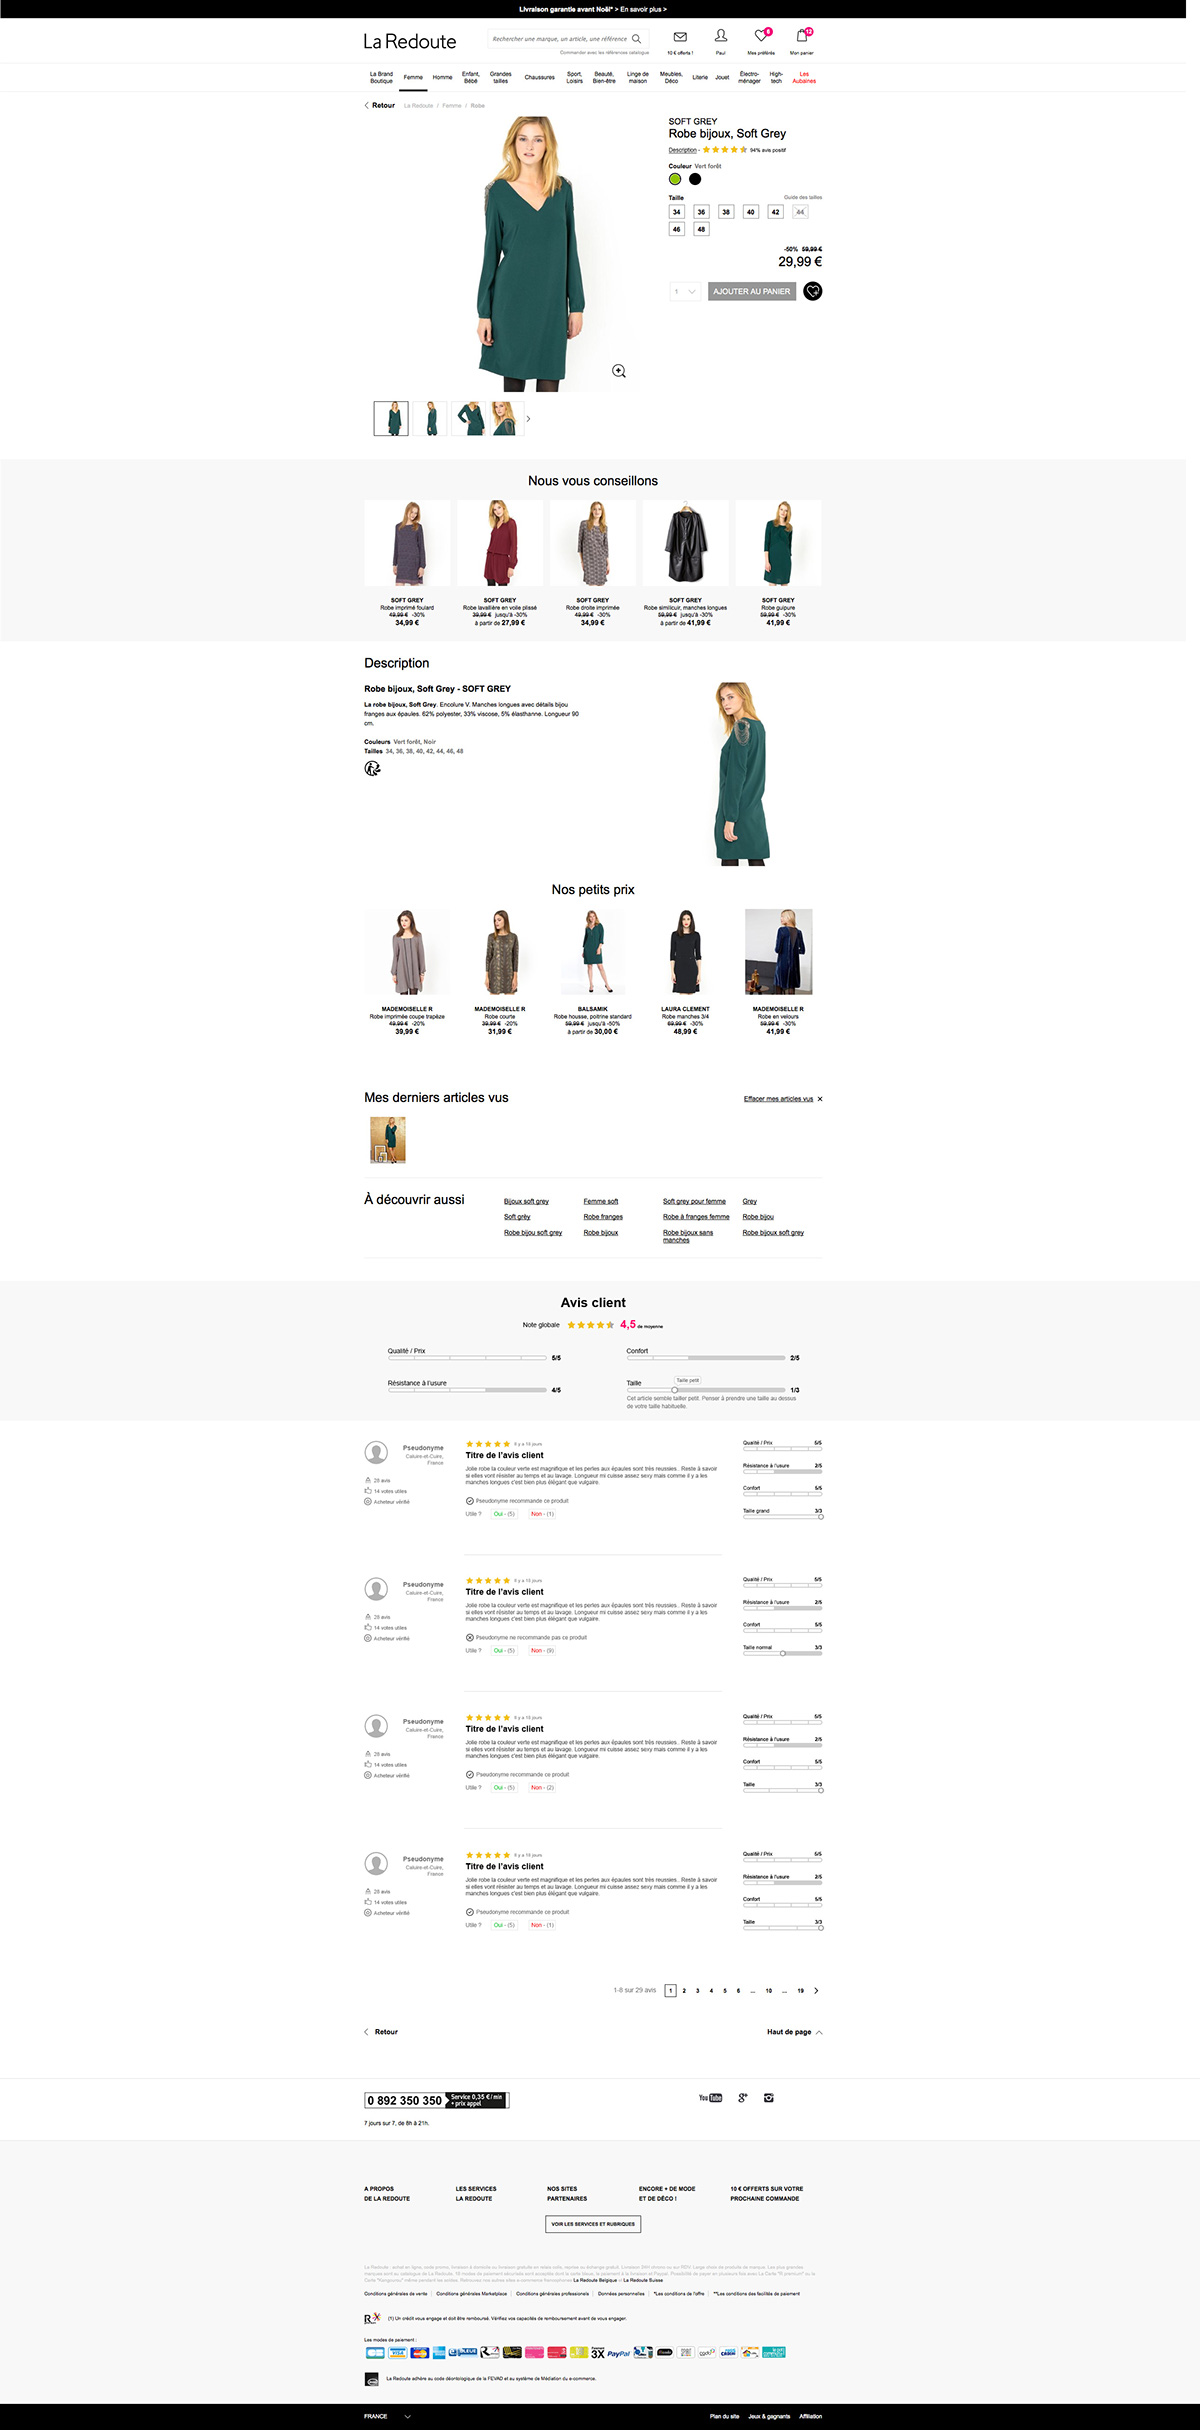 Refonte ux design avis client La Redoute Web e-commerce